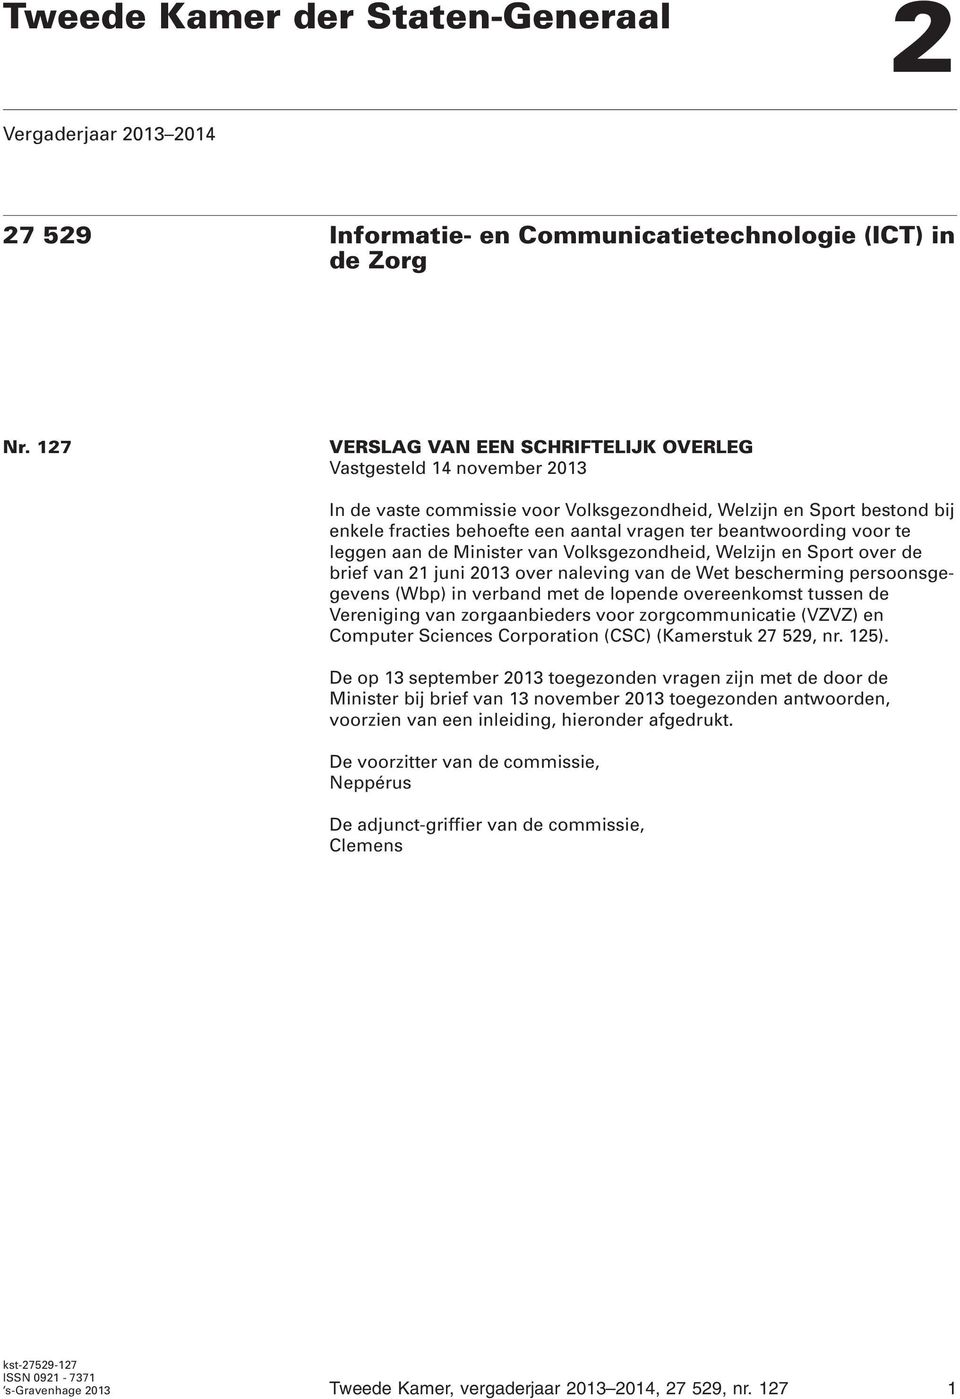 beantwoording voor te leggen aan de Minister van Volksgezondheid, Welzijn en Sport over de brief van 21 juni 2013 over naleving van de Wet bescherming persoonsgegevens (Wbp) in verband met de lopende